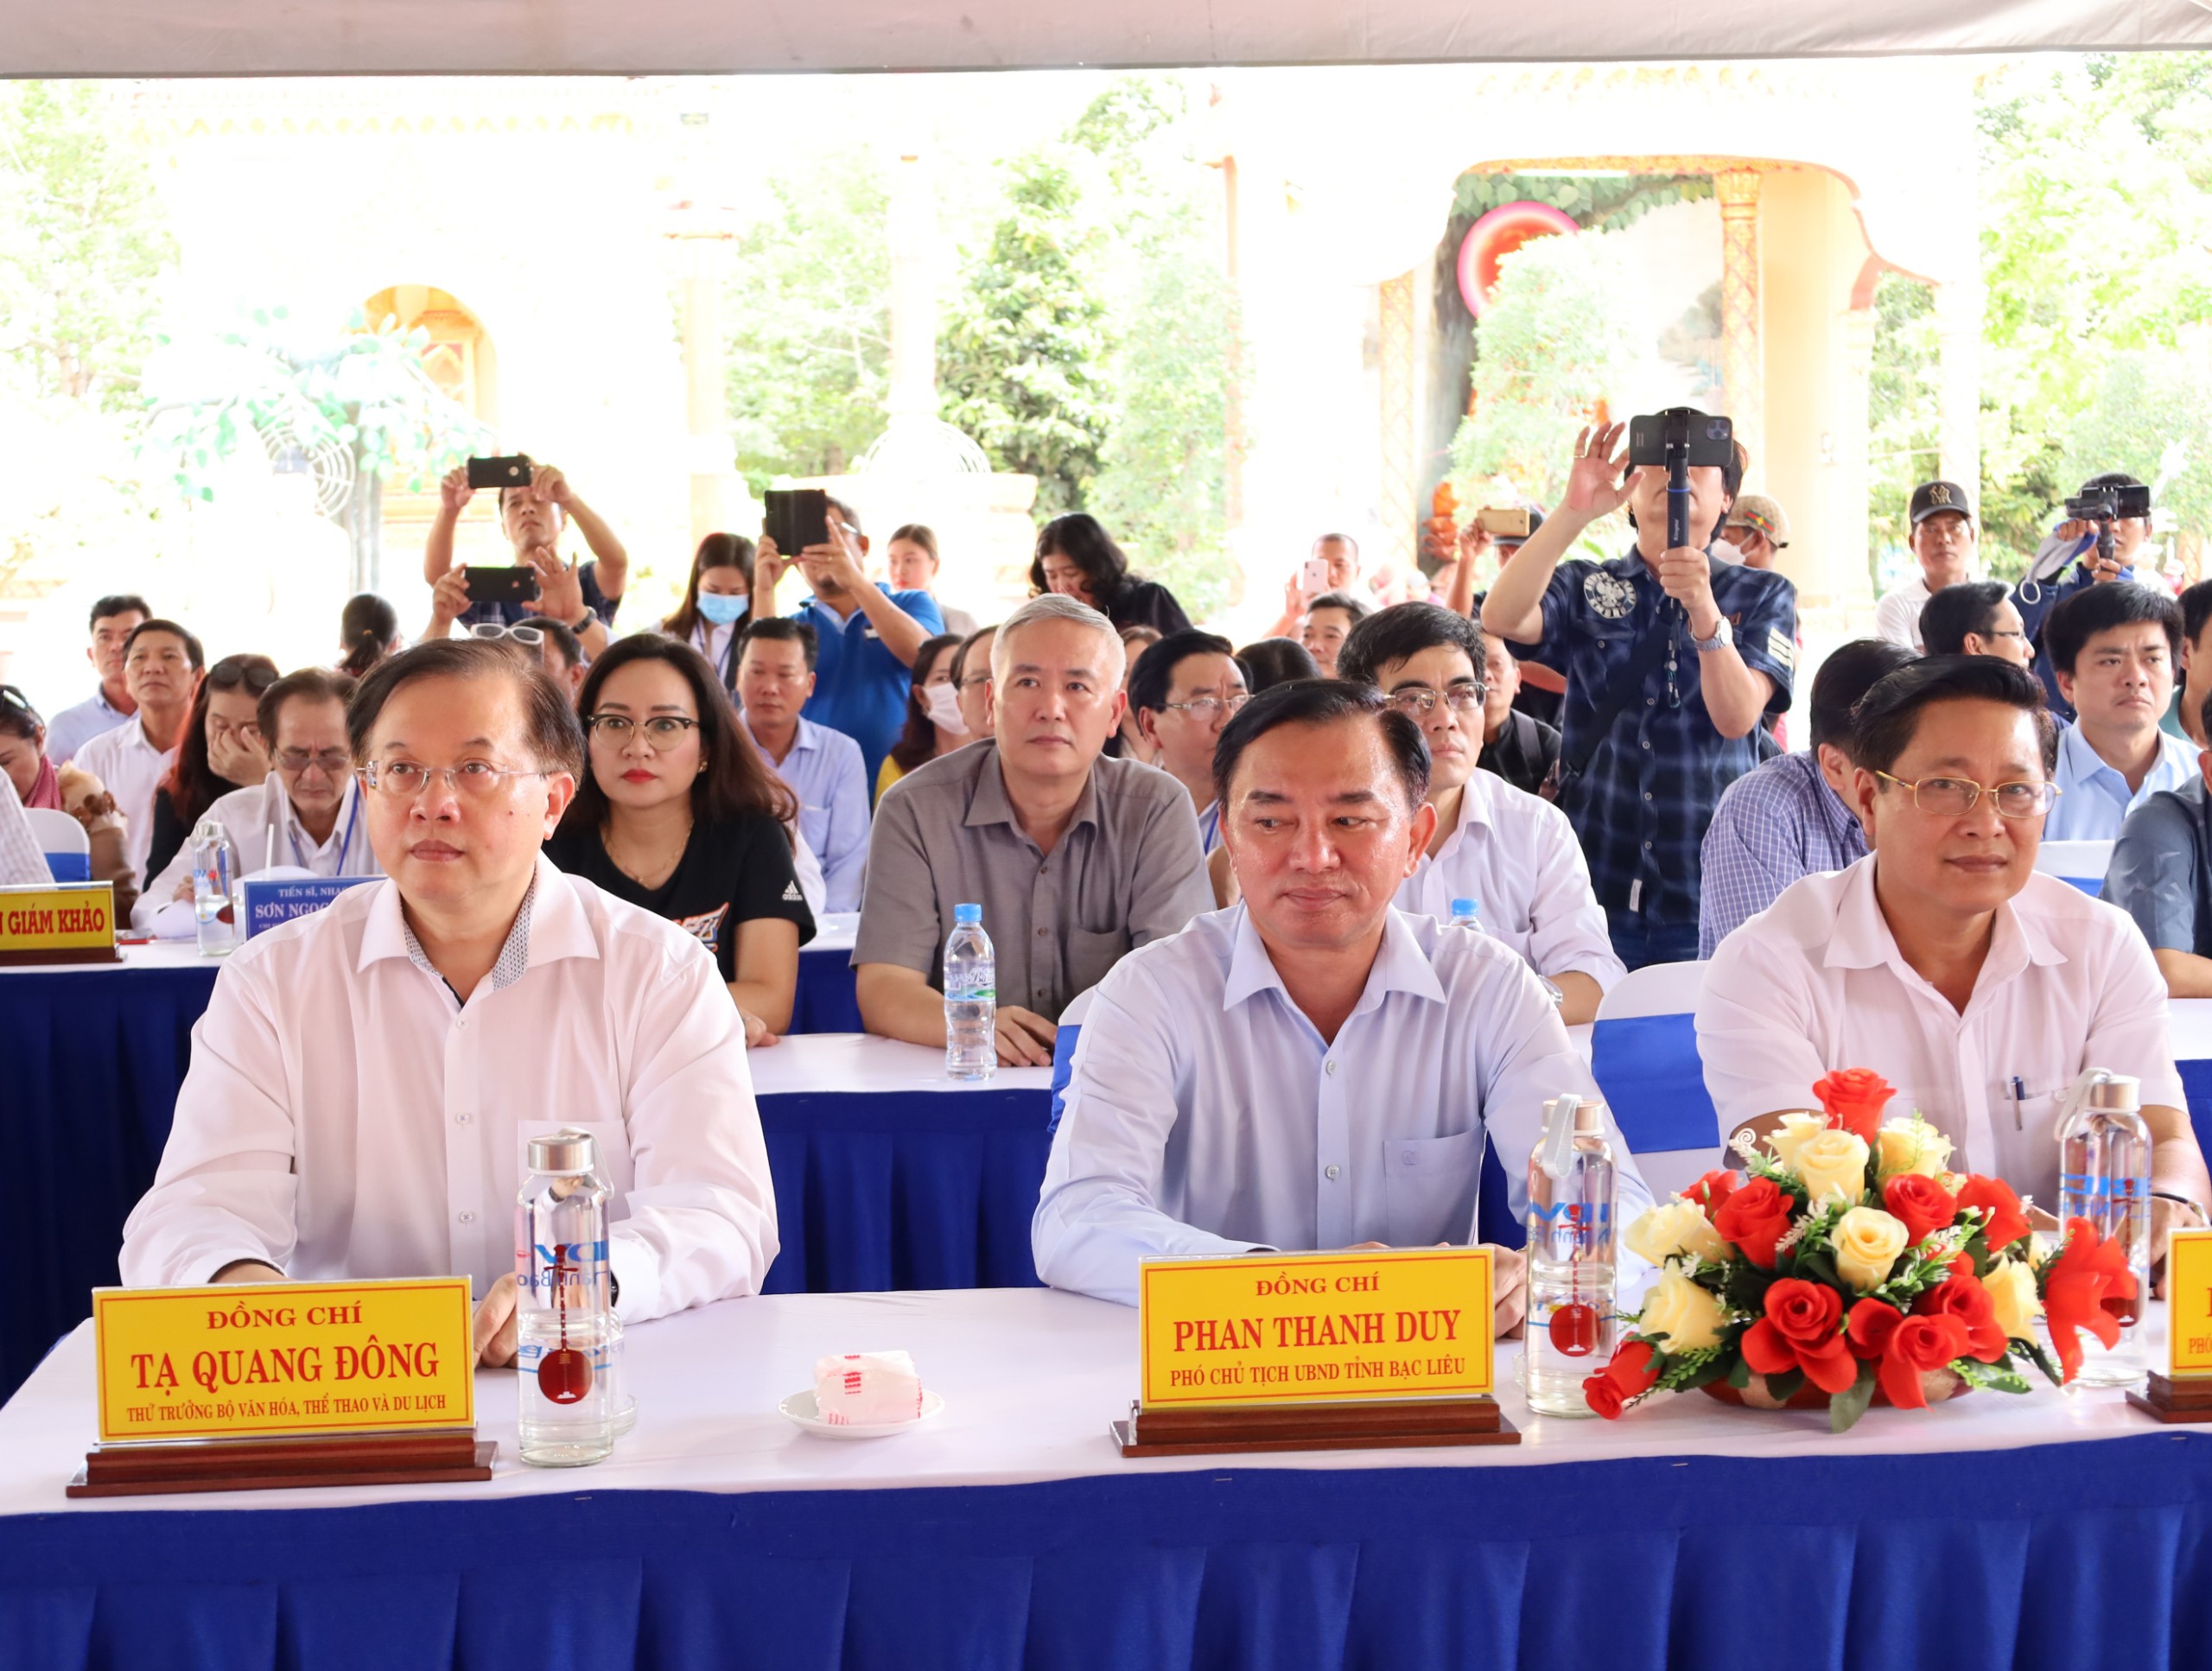 Ông Tạ Quang Đông - Thứ trưởng Bộ Văn hóa, Thể thao và Du lịch dự lễ khai mạc liên hoan.